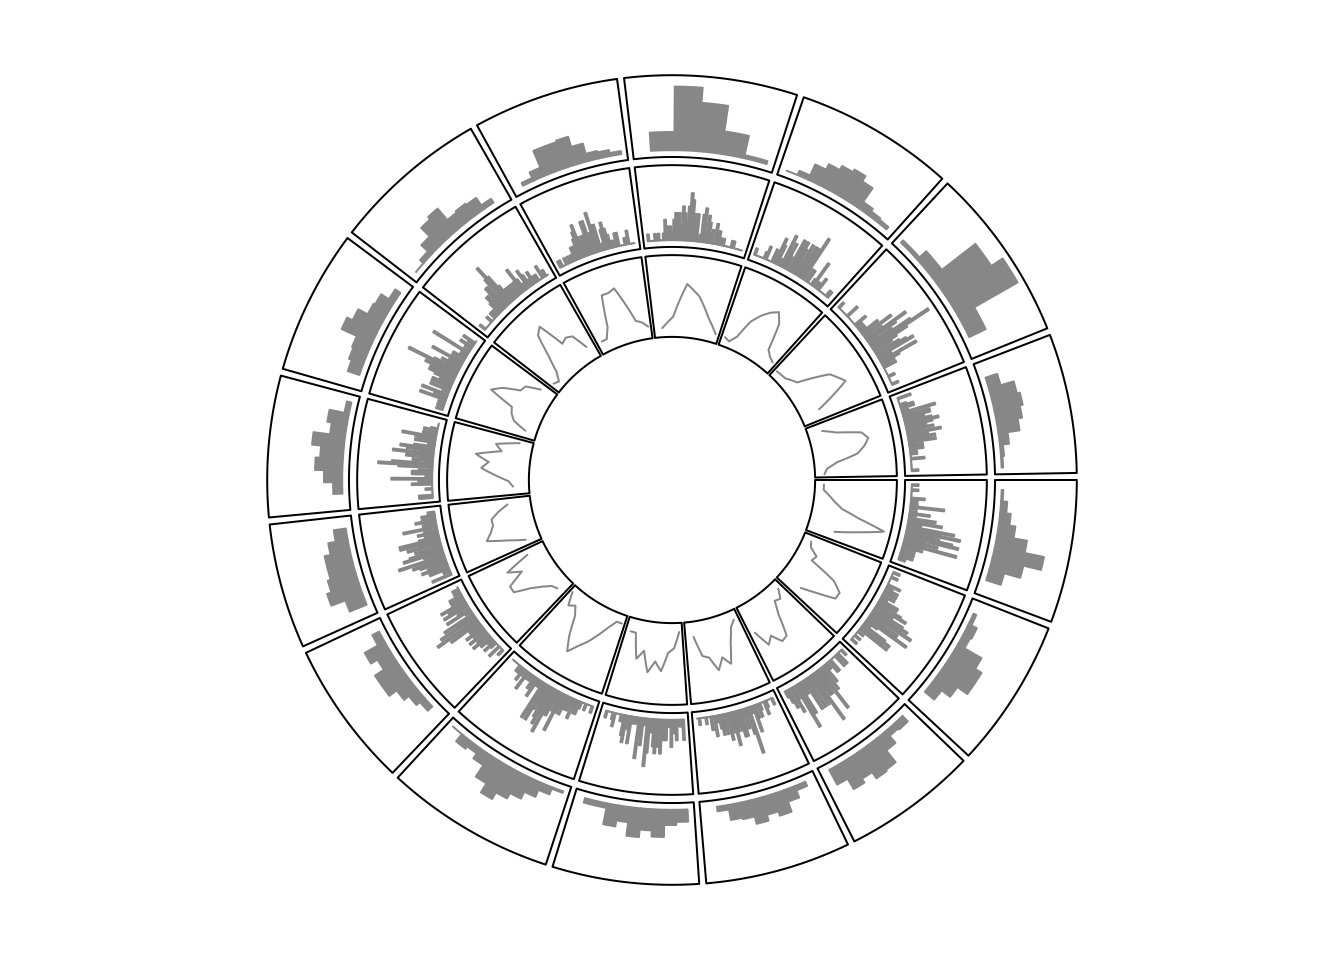 Histograms on circular layout.